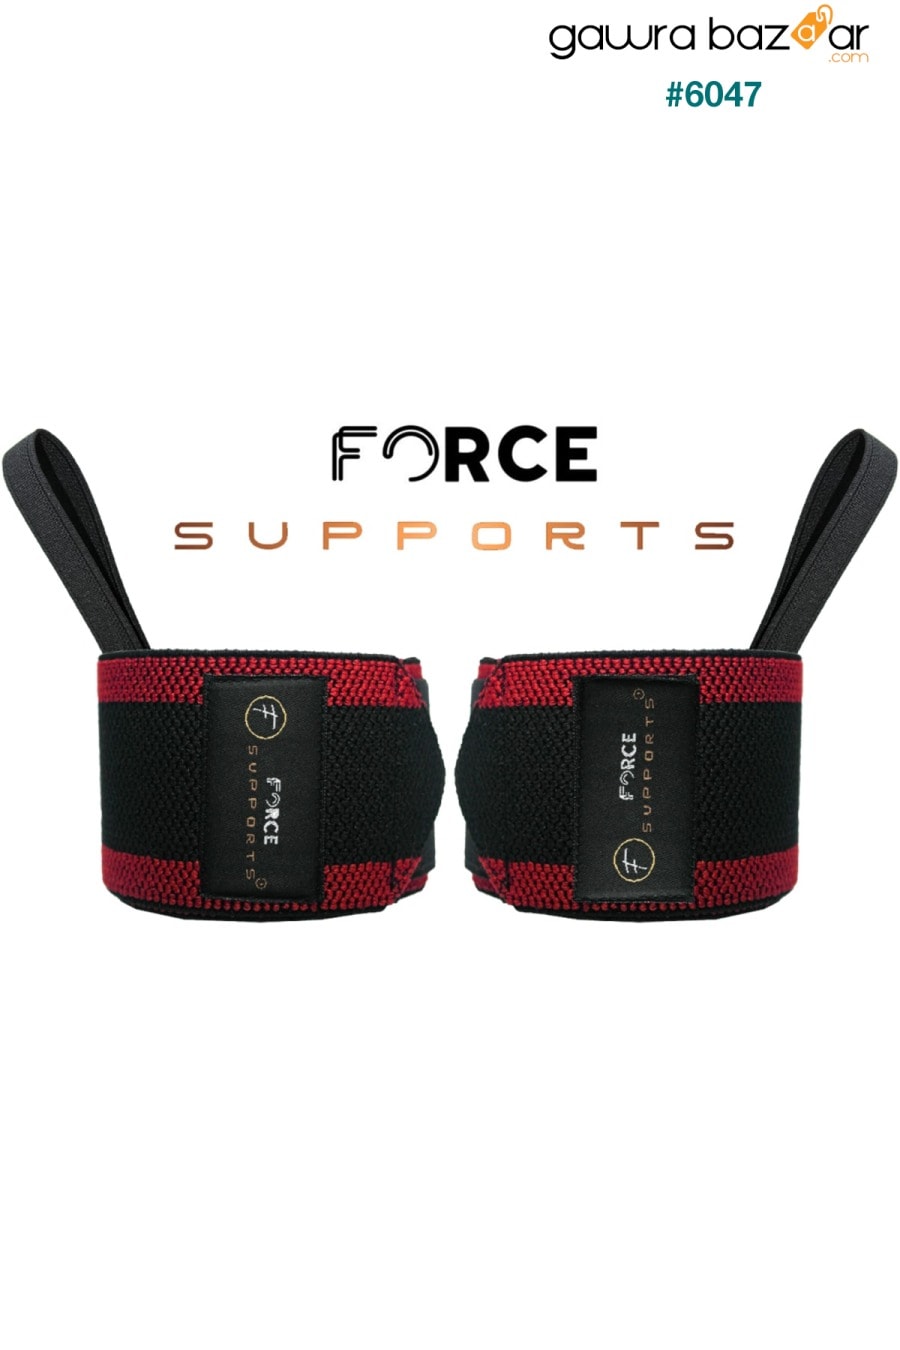 سوار دعم وزن الجسم Force Fitness Crossfit مخطط أسود وأحمر (2 قطعة) Şk-122 Force 1